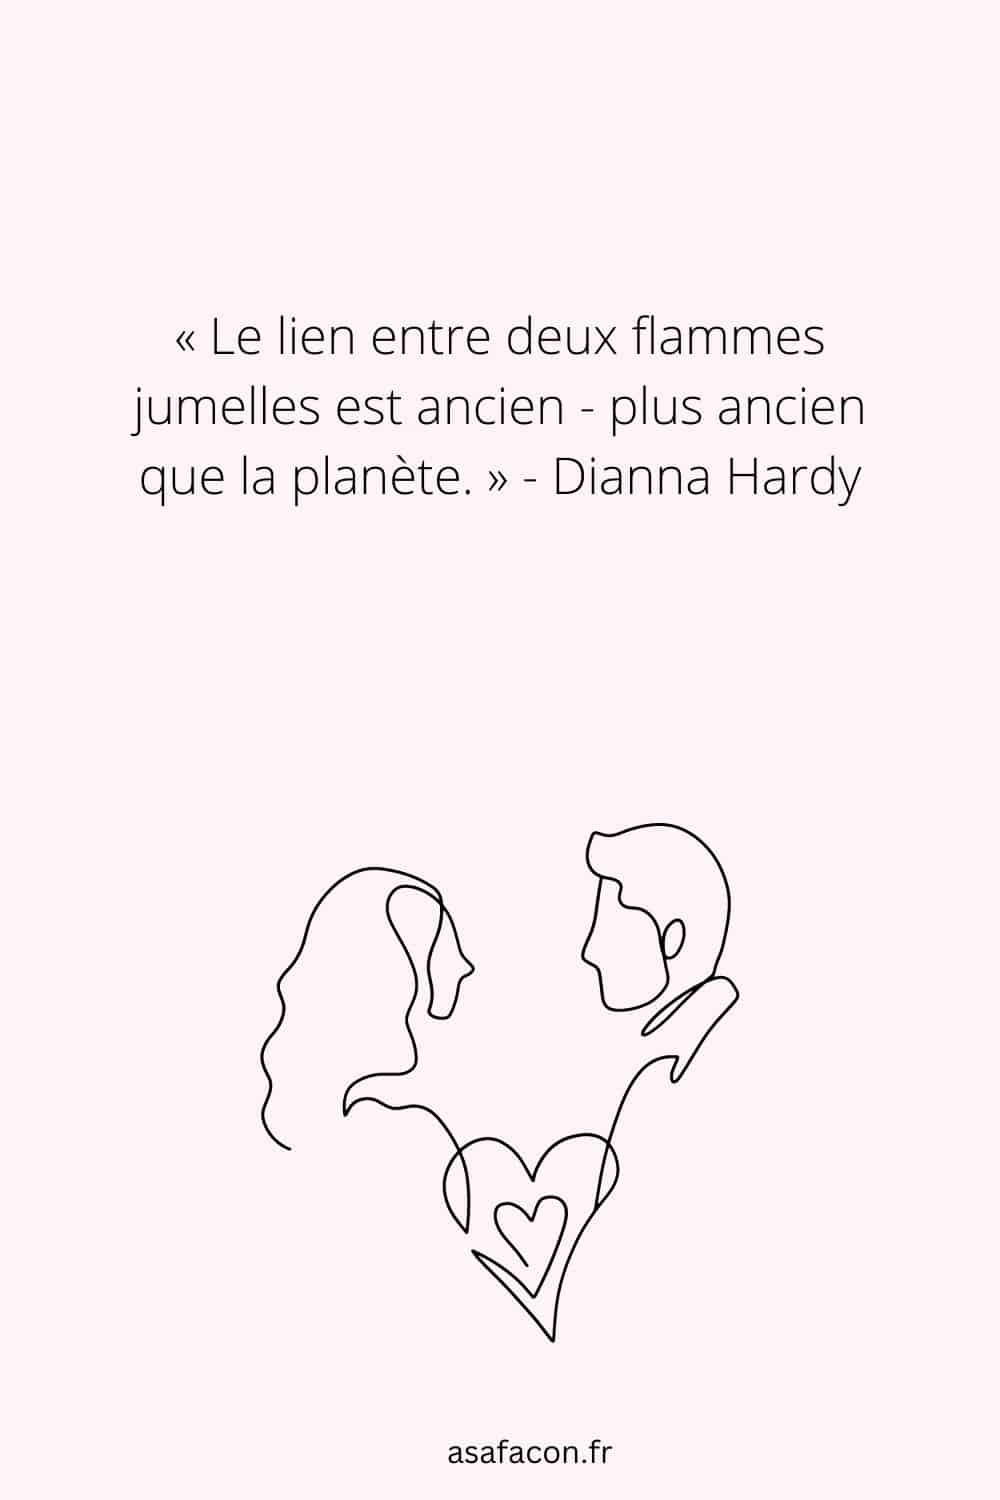 Citation sur les flammes jumelles de Dianna Hardy